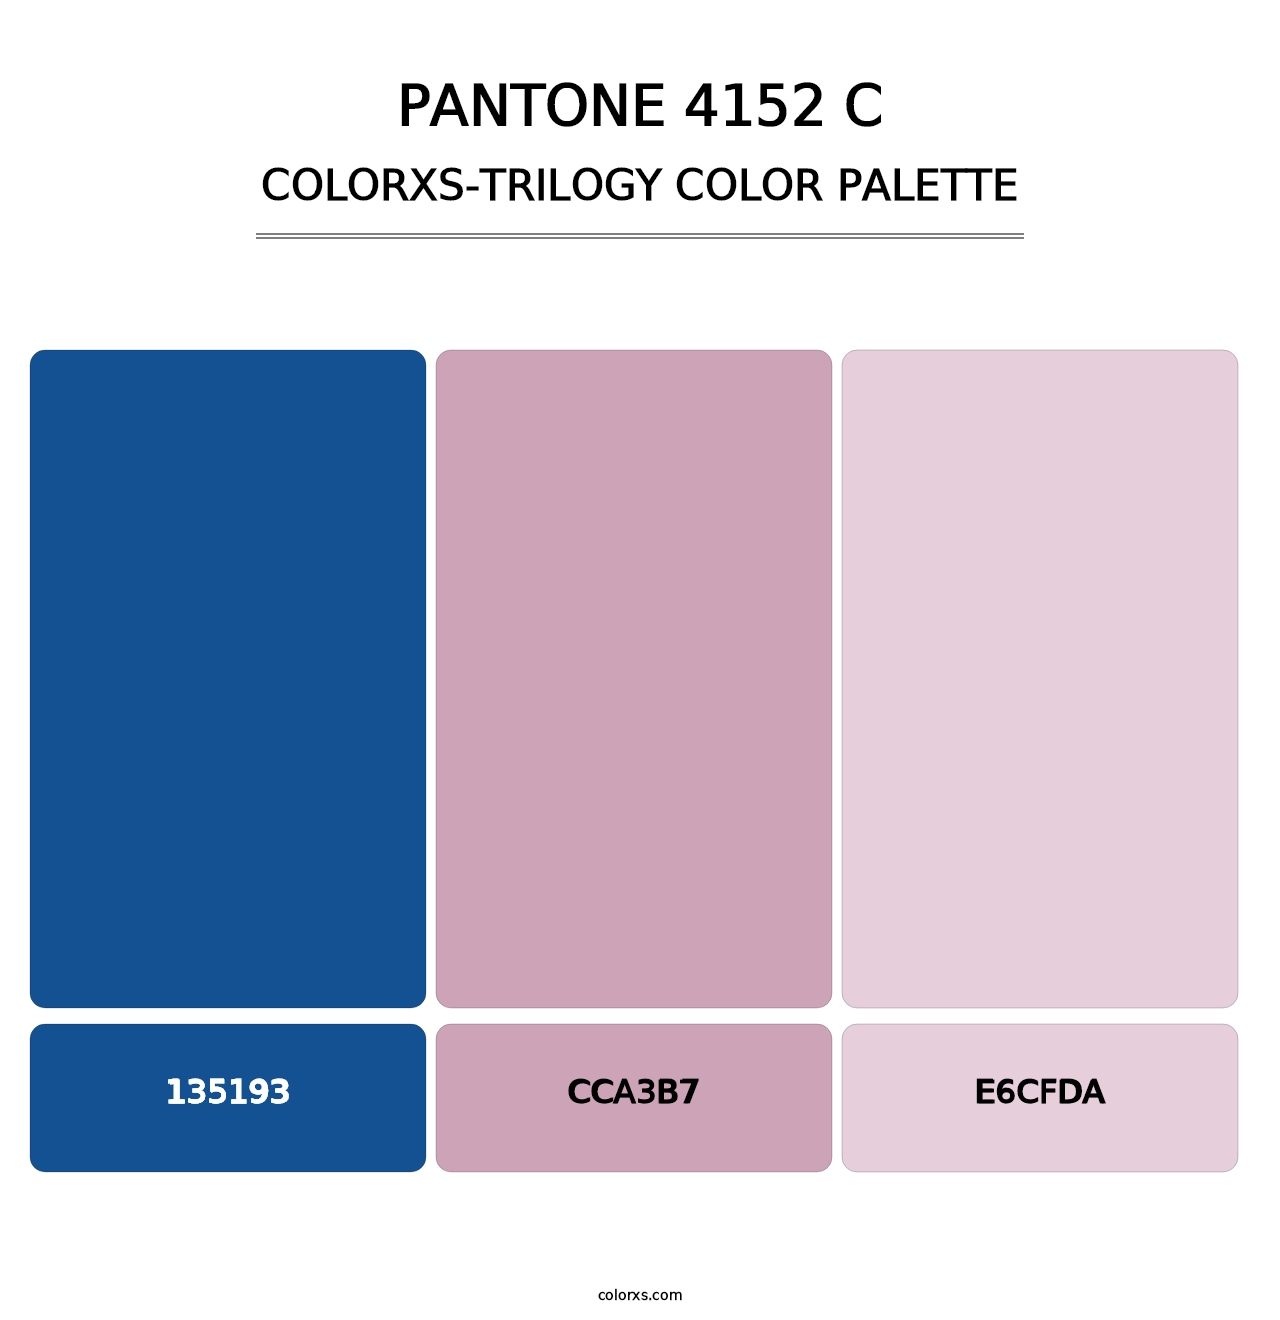 PANTONE 4152 C - Colorxs Trilogy Palette